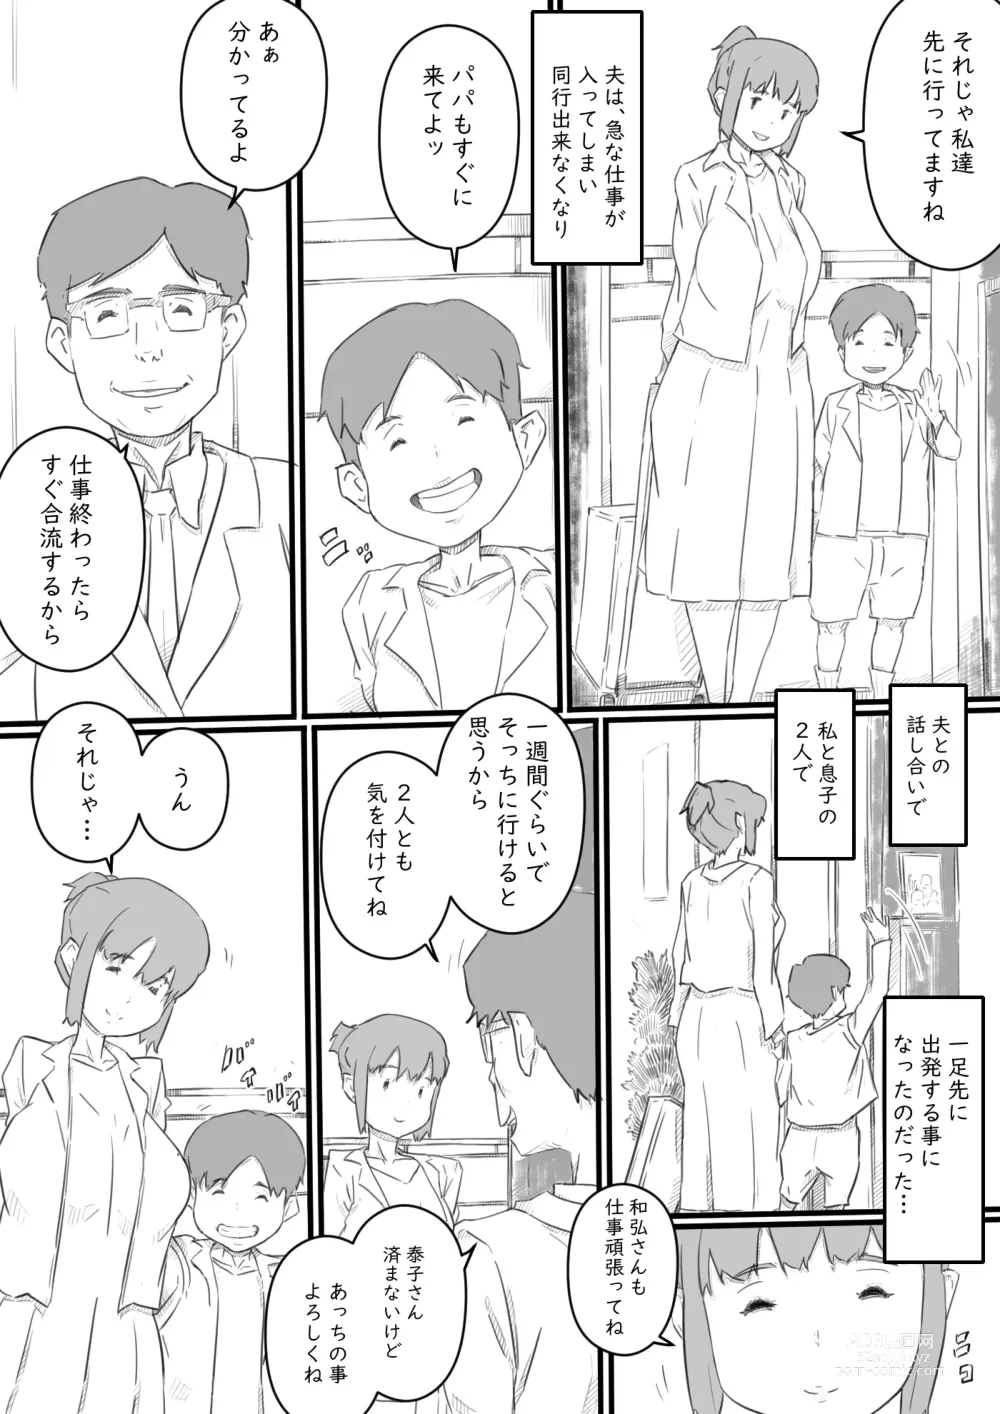 Page 3 of doujinshi Kyou kara Mama wa Betsu no Dareka no Mono...